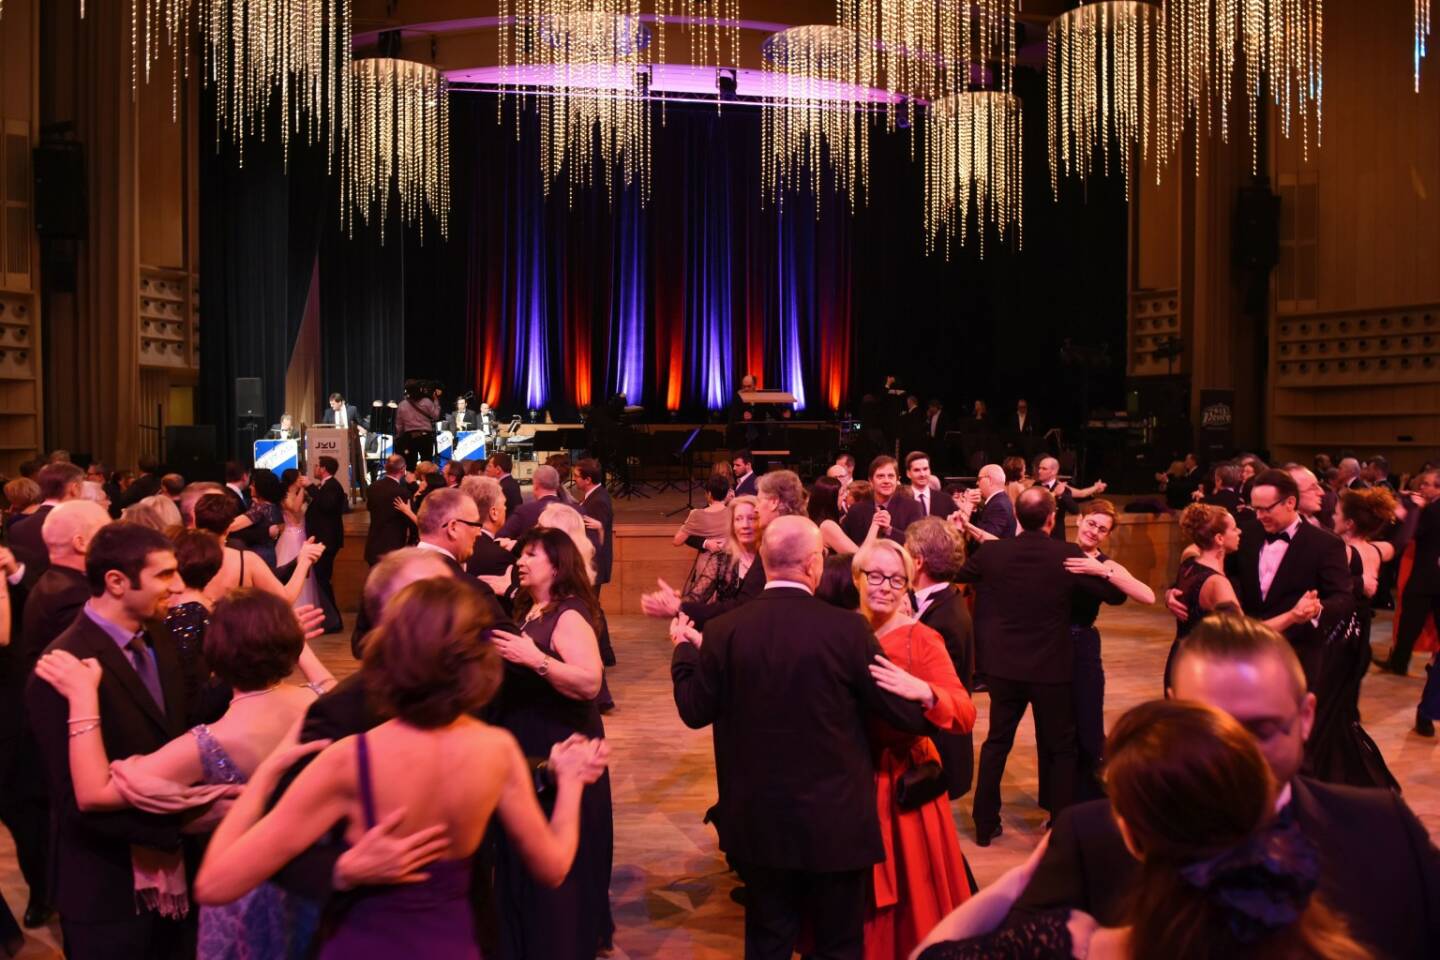 Über 2.500 Gäste kamen zum JKU-Ball; volles Parkett im Brucknerhaus, tanzen, Ball, Tanzfläche, Bühne; Bildrecht: JKU/Röbl